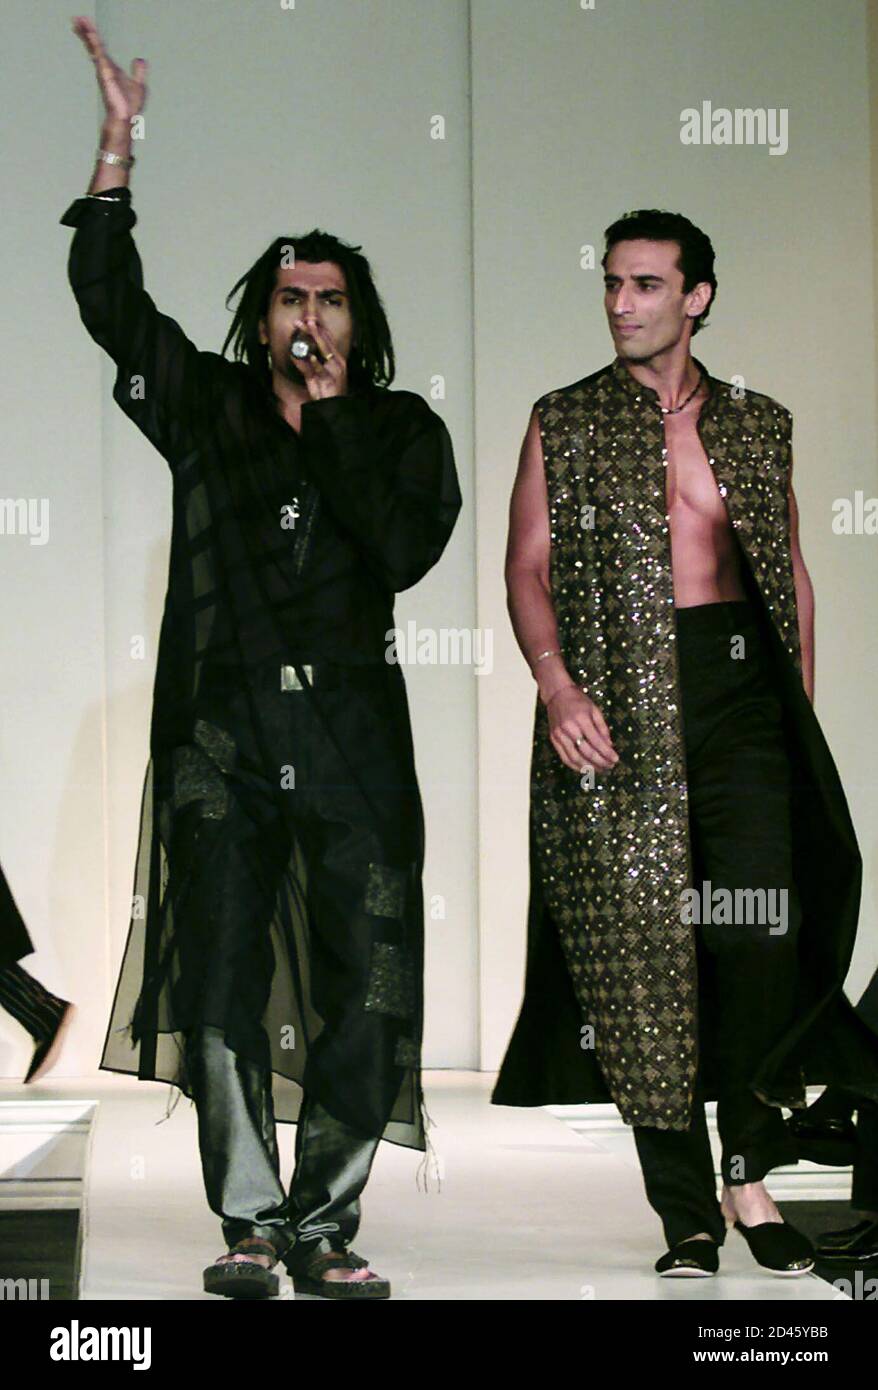 Der internationale Rap-Künstler 'Apache Indian' aus Indien singt während  einer Modenschau in Bombay, 8. August 2001, als ein männliches Model die  Rampe betritt. Rund 44 indische Designer präsentieren ihre Arbeiten während  einer